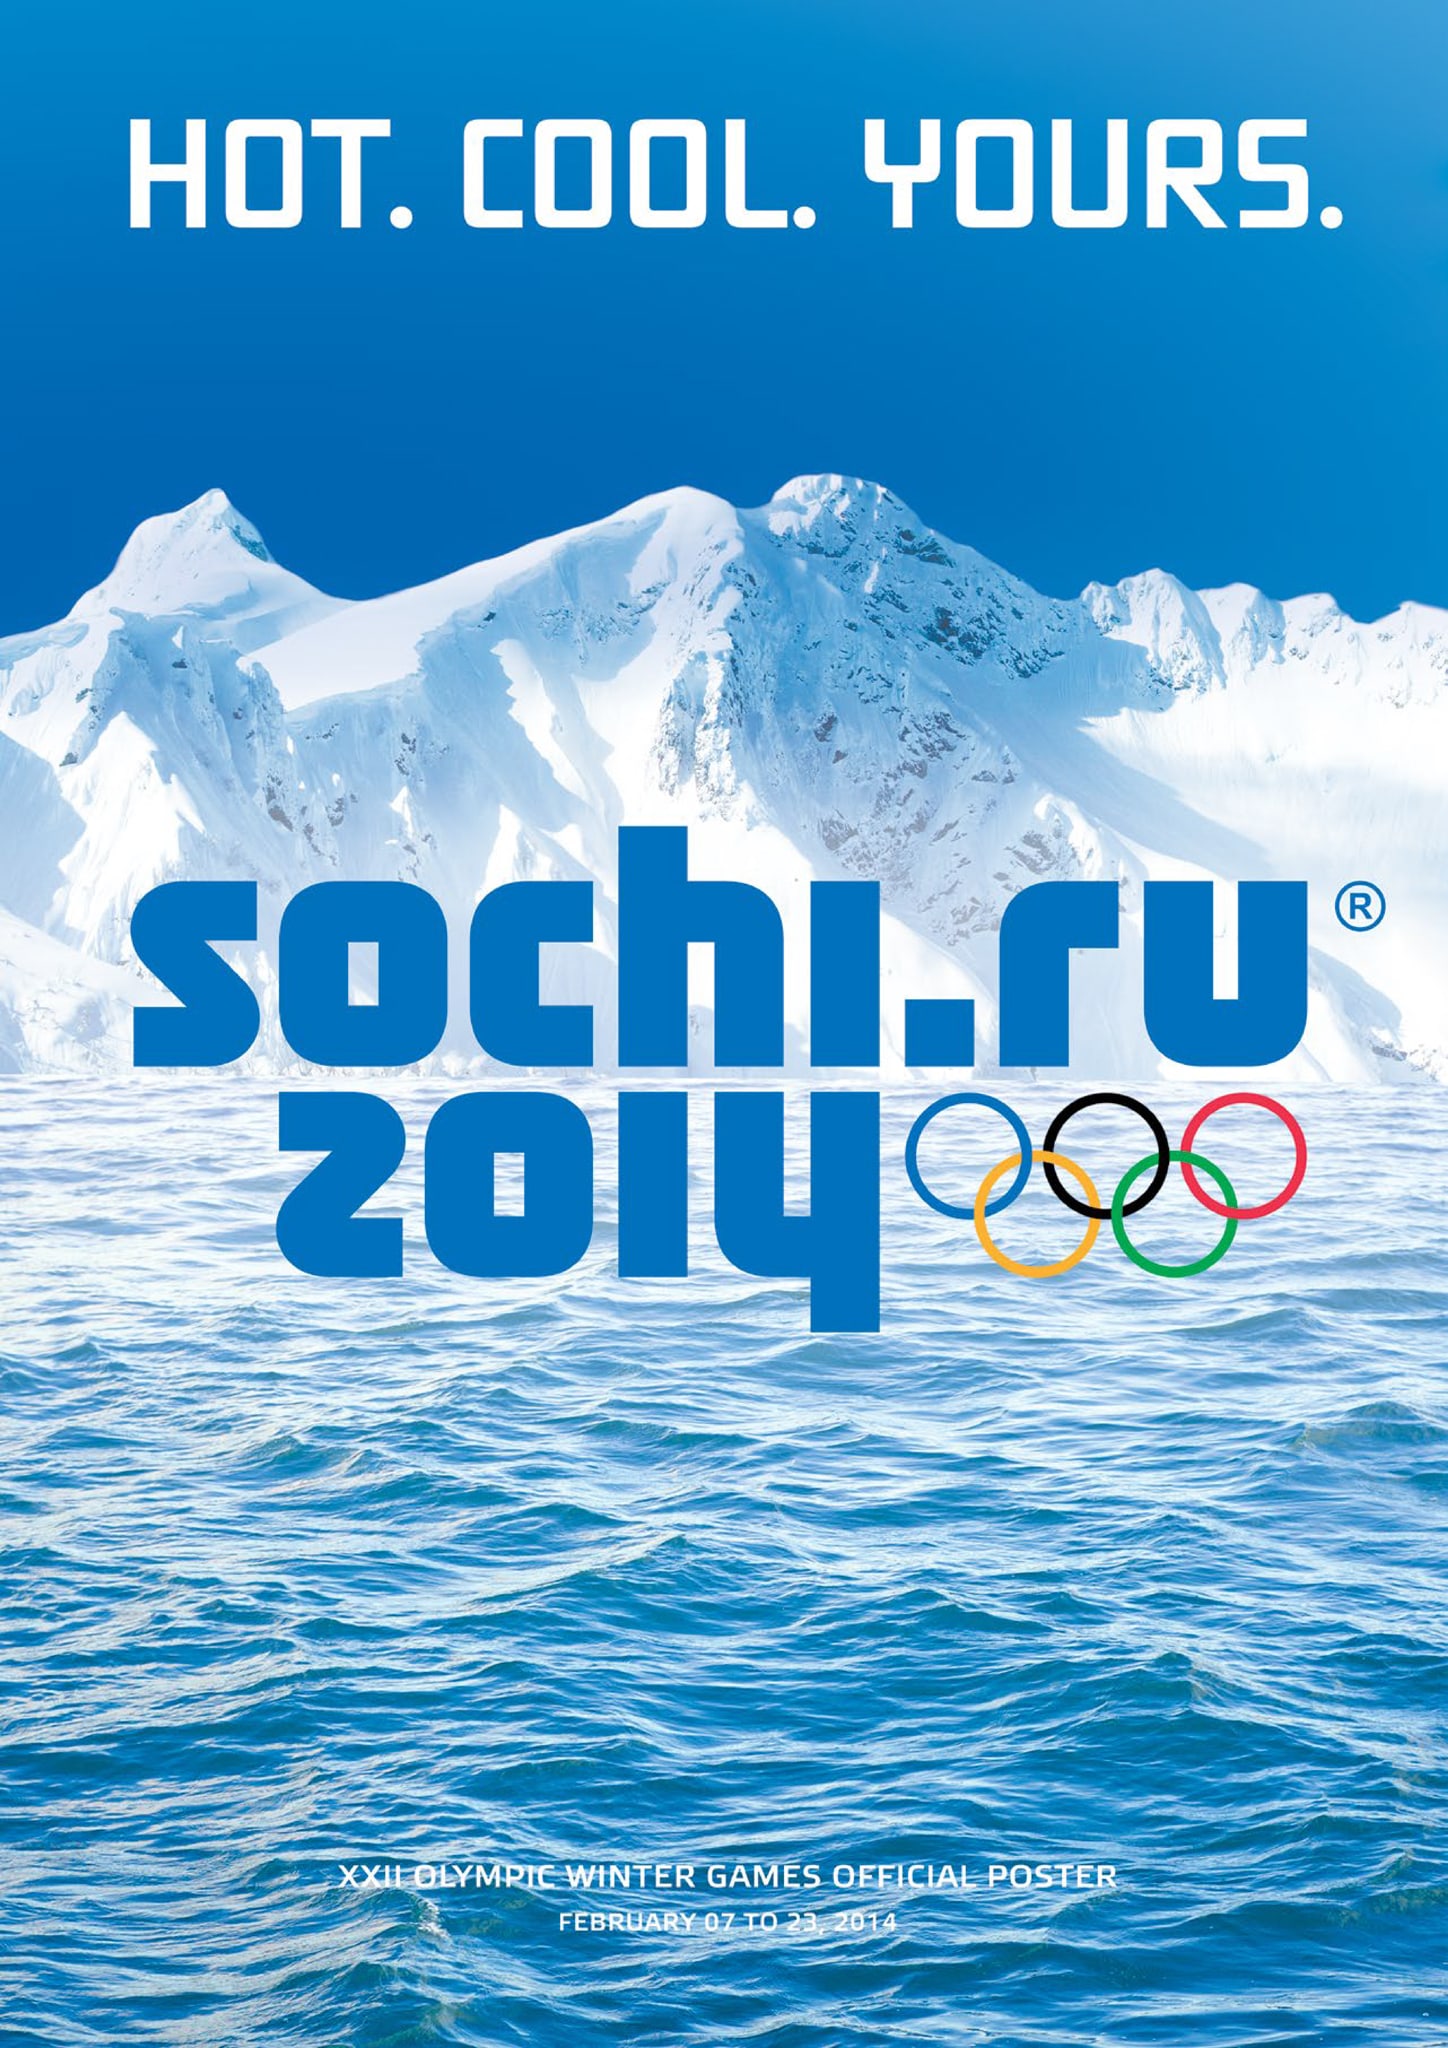 Carta Olímpica ganha Doodle do Google nos Jogos de Inverno de Sochi